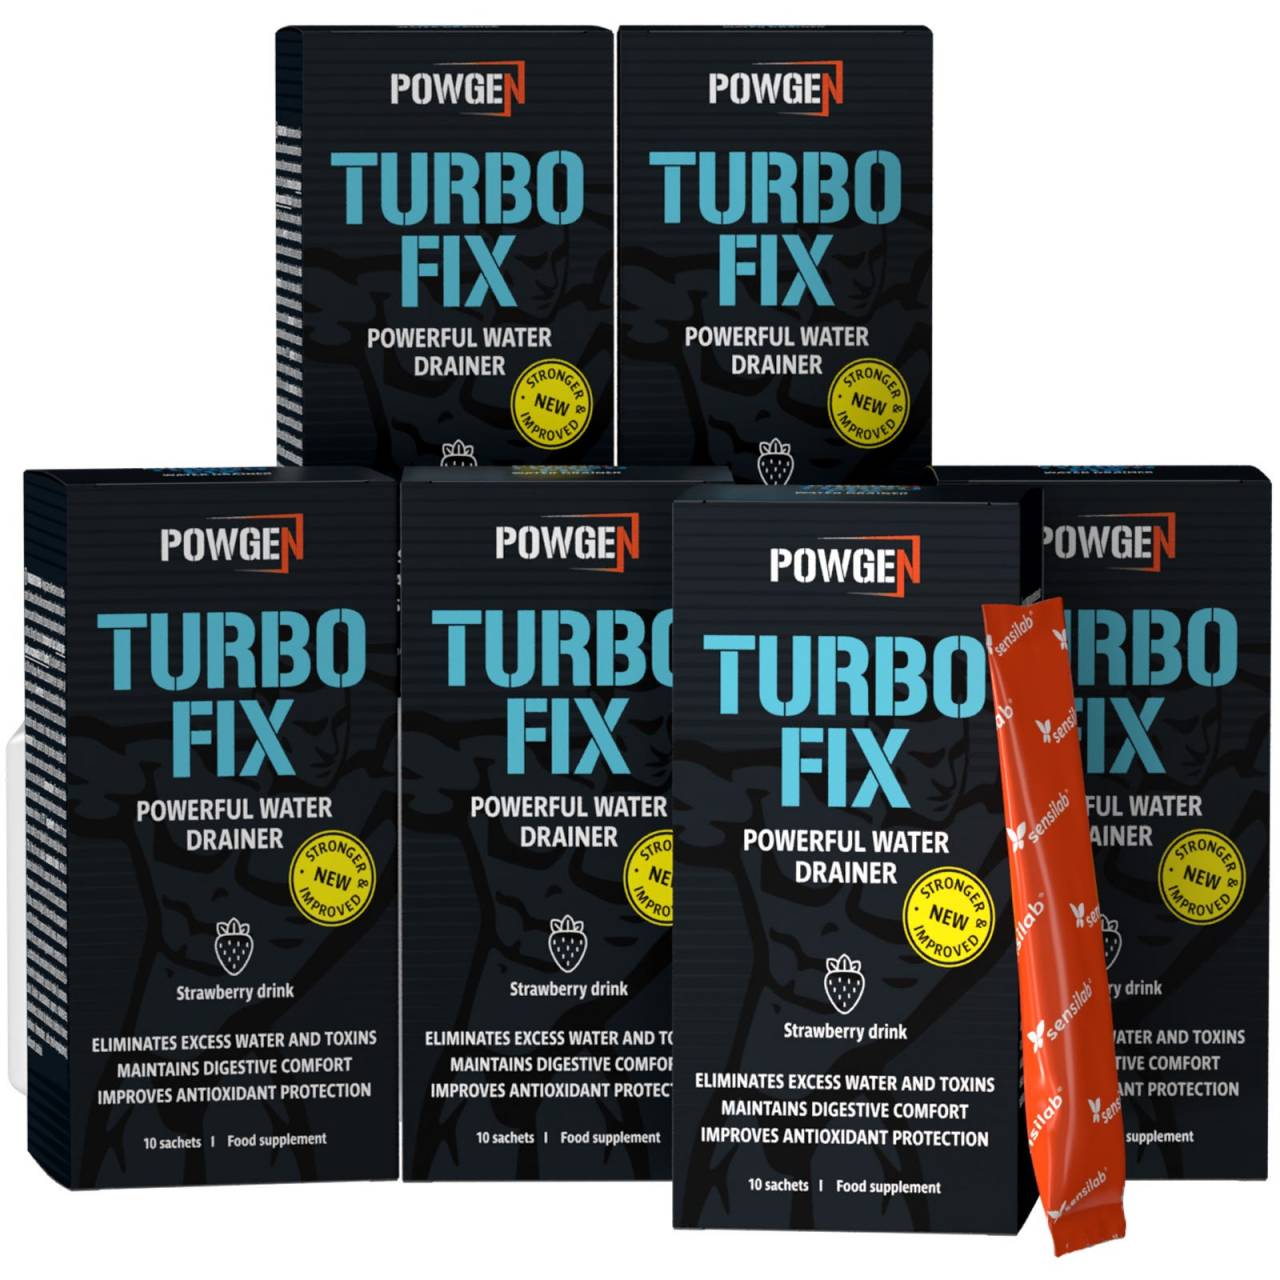 Turbo Fix Water Drainer - Bodybuilding entwässern.